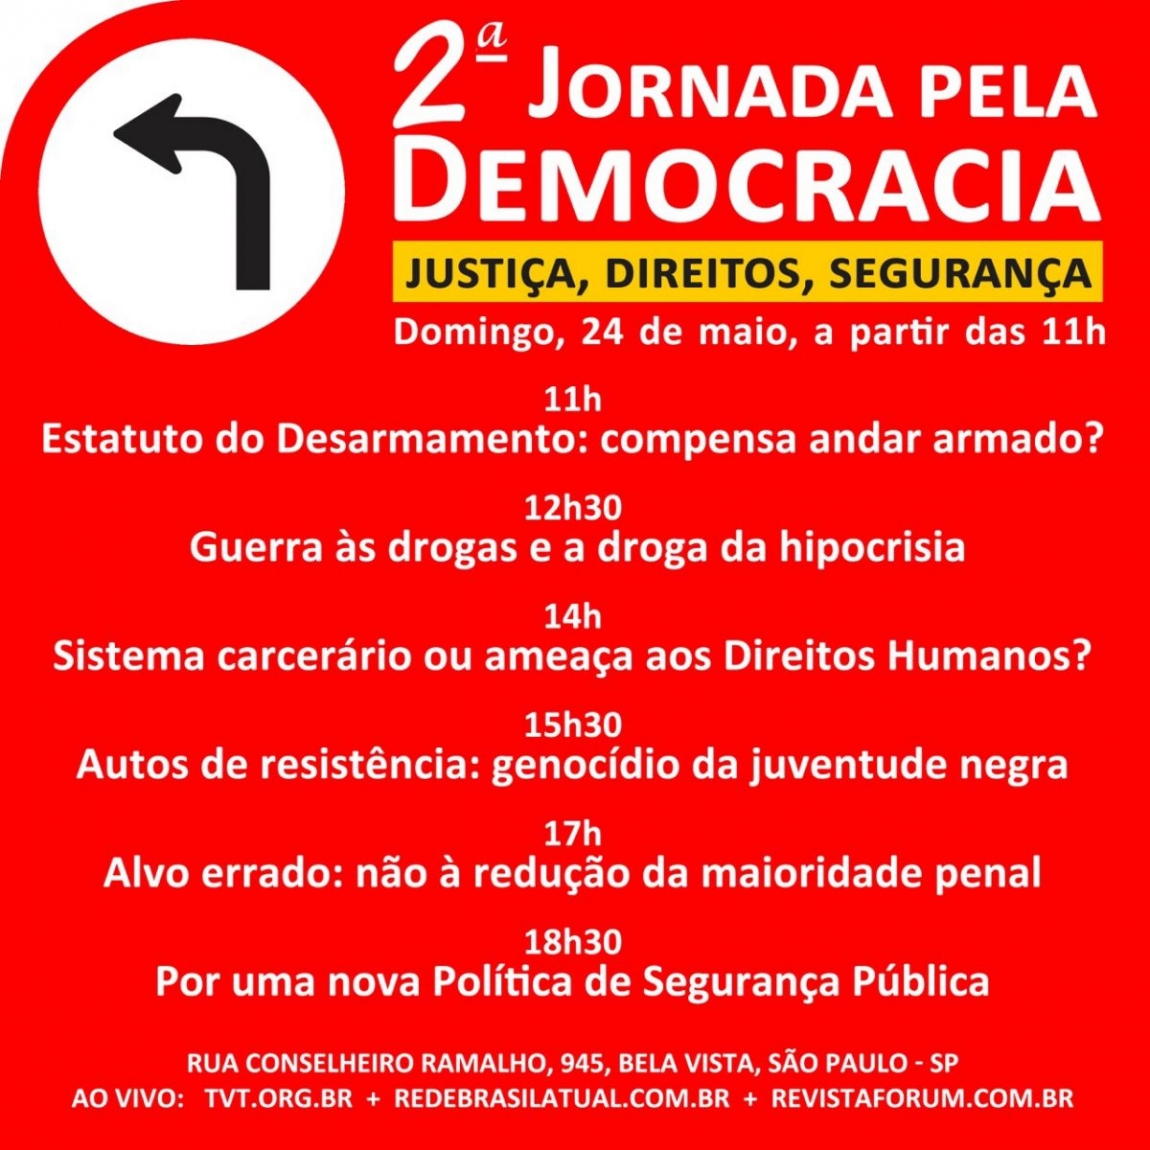 Imagem de SP: 2ª Jornada pela Democracia acontece neste domingo (24)